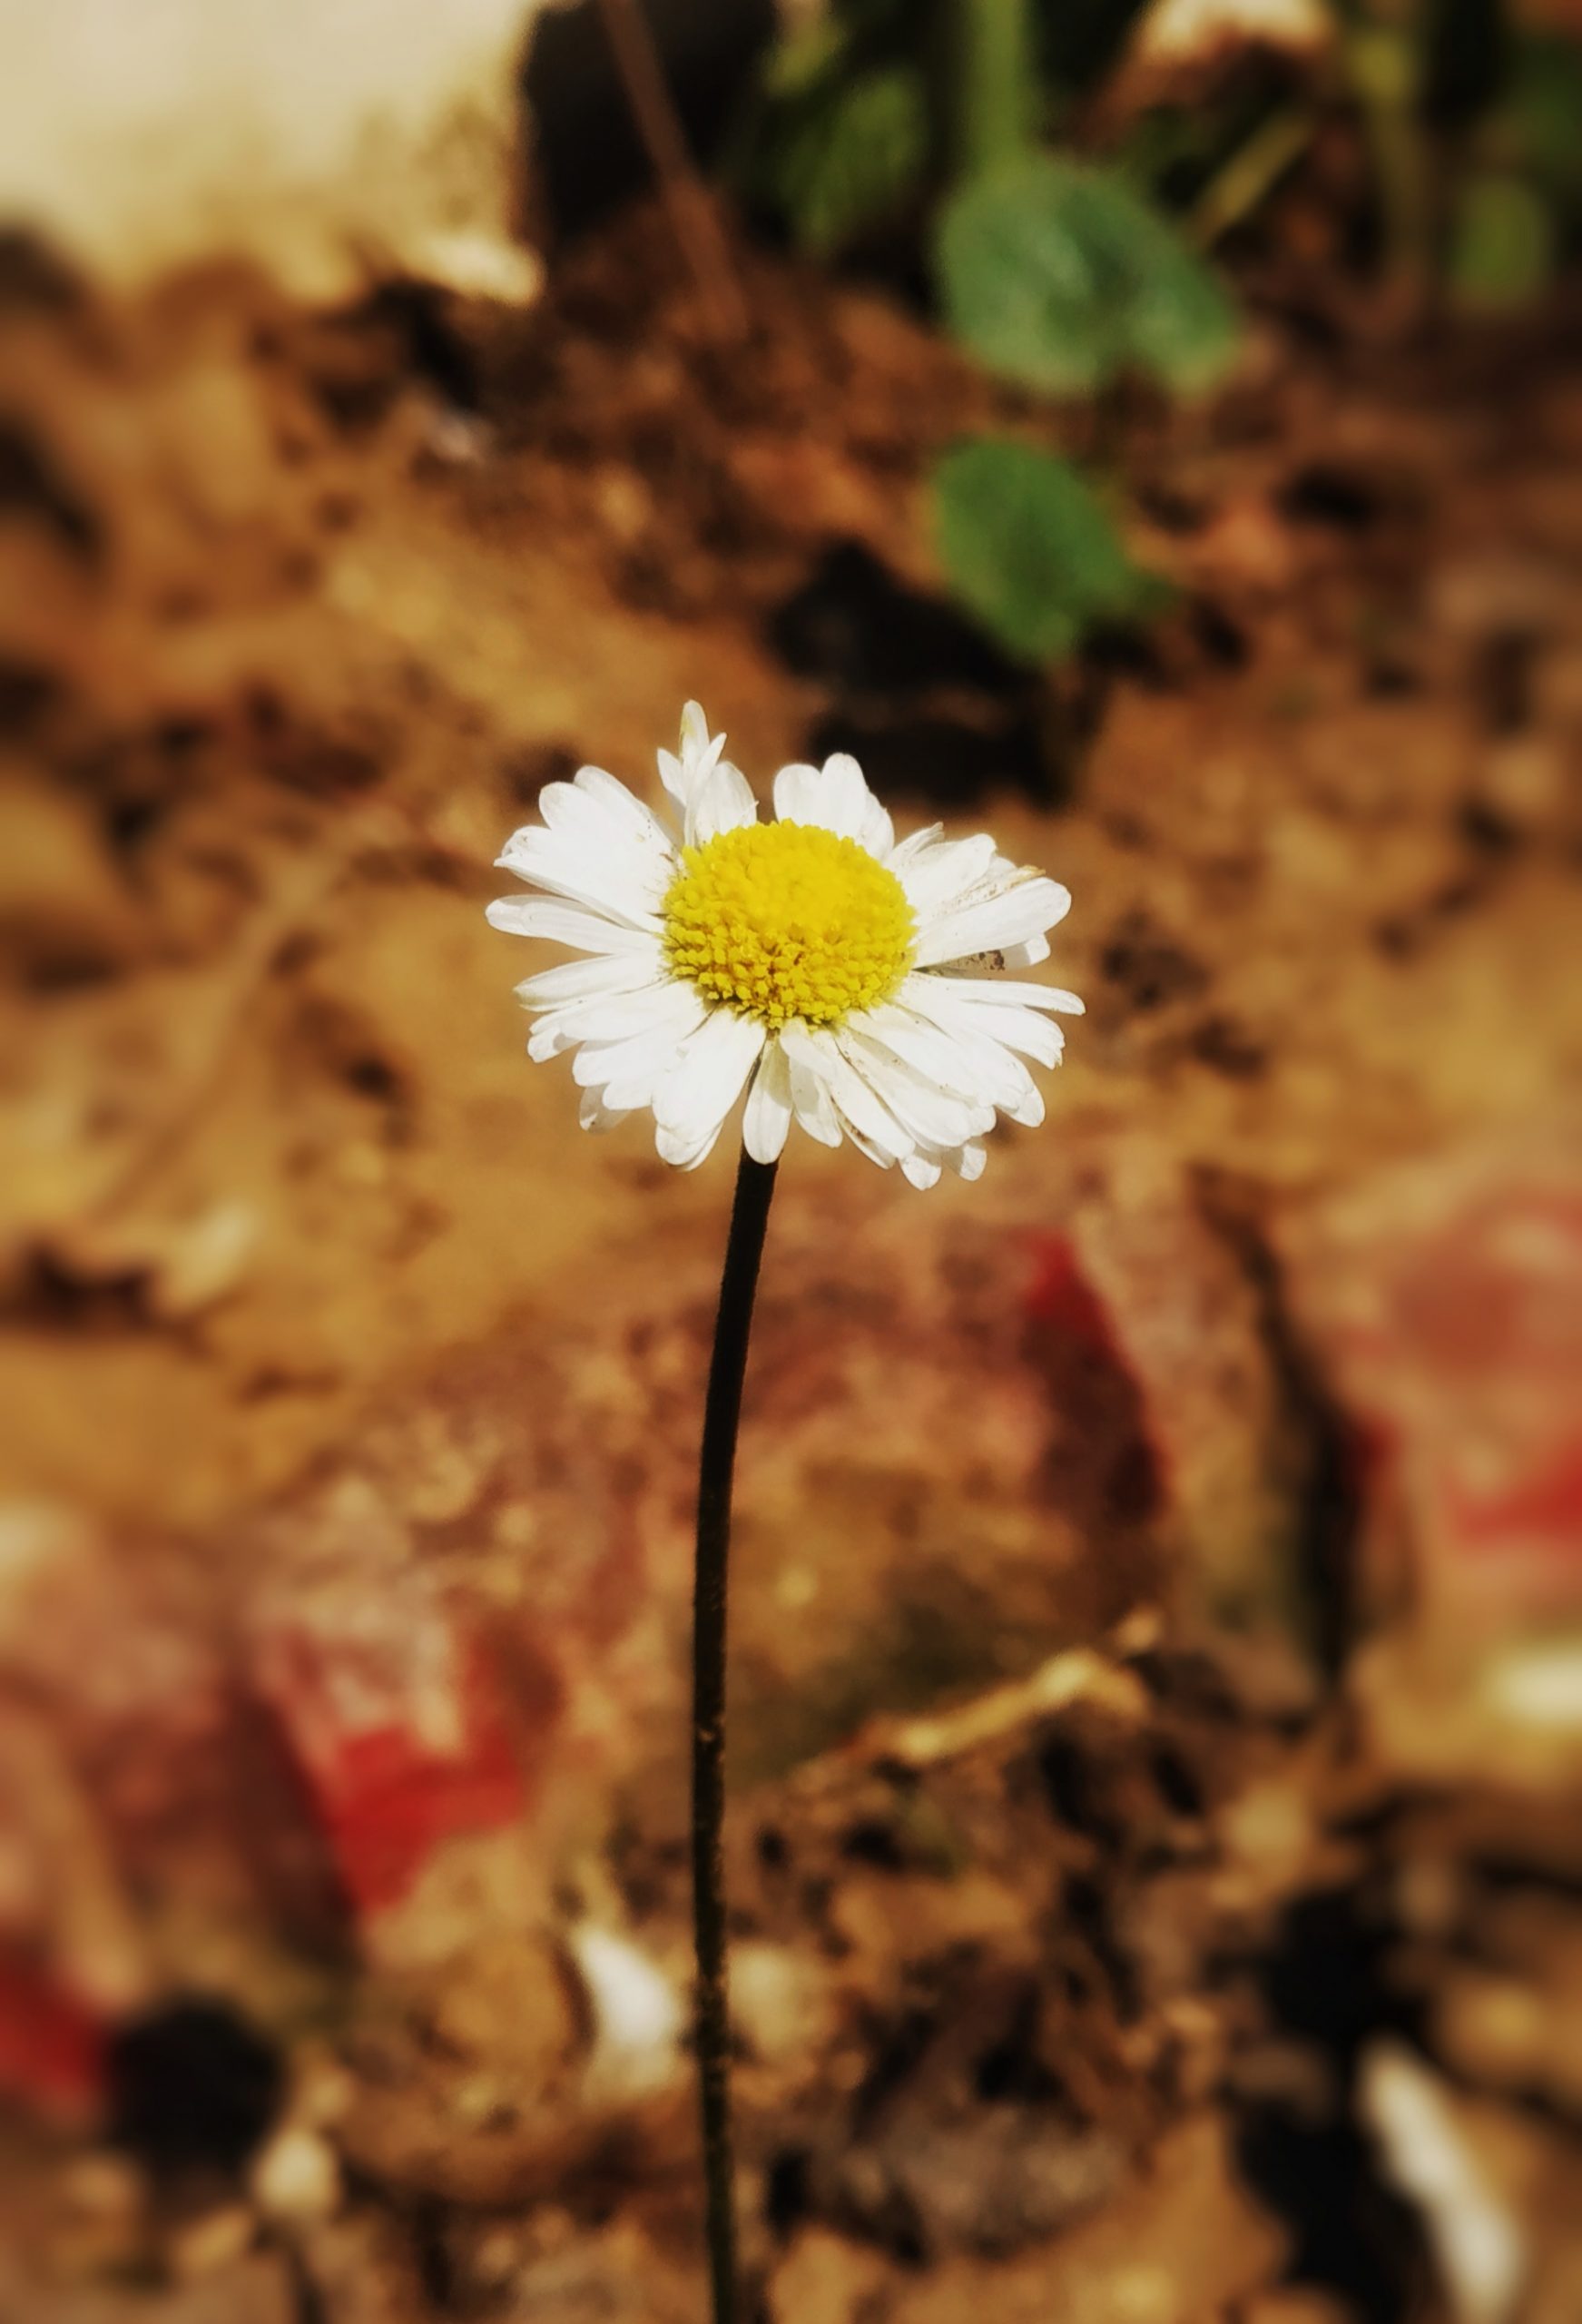 A daisy flower